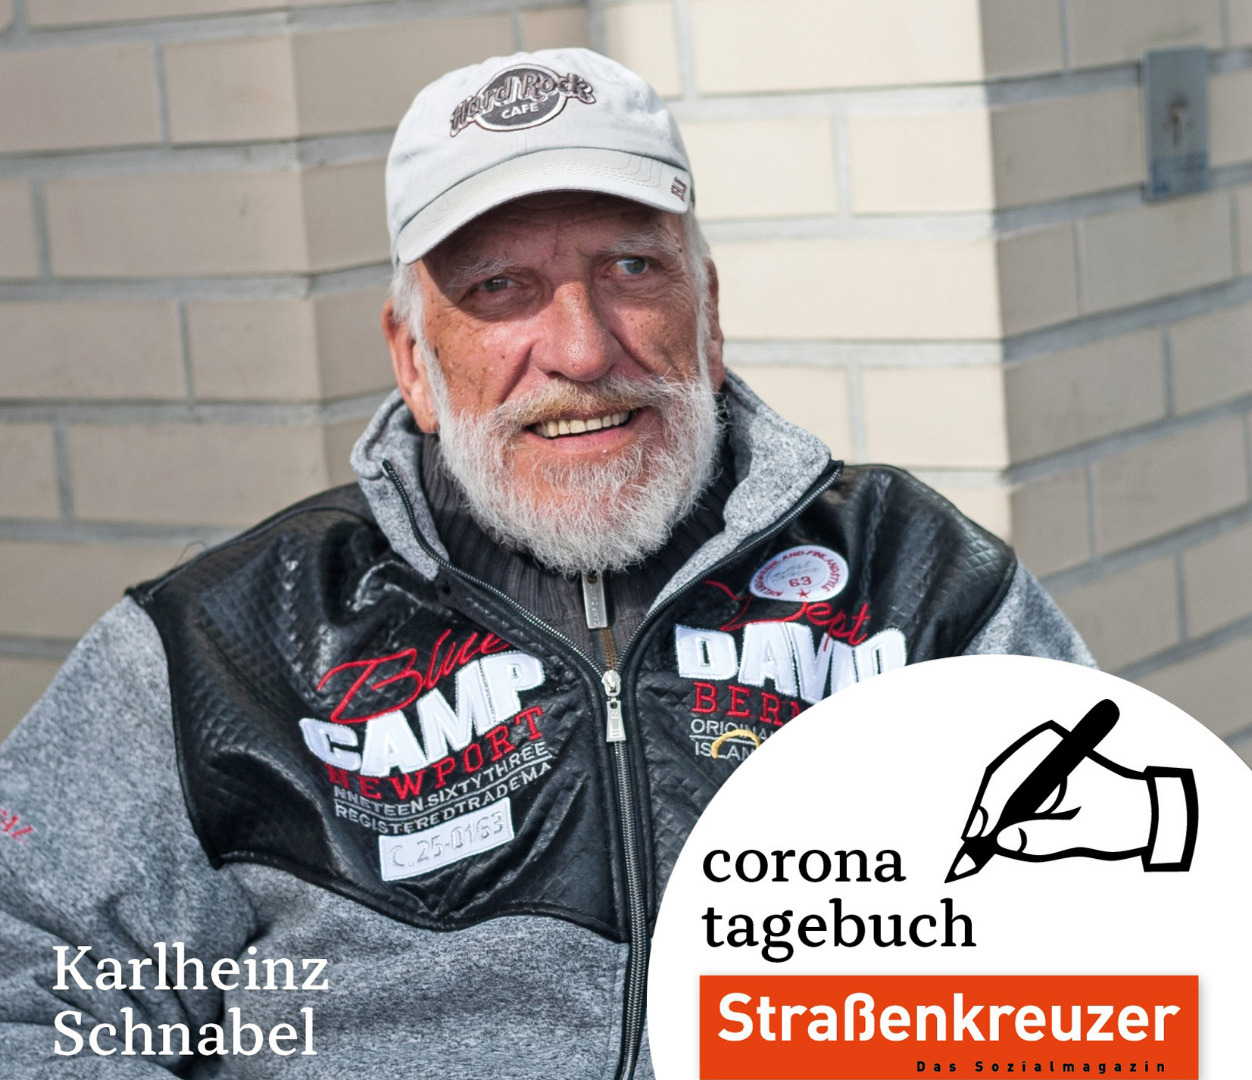 Karlheinz „Carlo“ Schnabel war 2008 der erste Stadtführer unserer Schicht-Wechsel-Touren an Orte der Armut und Hilfe in Nürnberg. Er war Verkäufersprecher und hat sich in der Schreibwerkstatt engagiert. Das macht seine Gesundheit alles längst nicht mehr mit. Aber seinen Verkaufsplatz am Einkaufszentrum Röthenbach/Schweinau würde er auch mit seinen 70 Jahren nicht aufgeben wollen. „Ich bin jetzt, wie alle vernünftigen Leute, meistens zu Hause. Nur mit dem kleinen Hund geh ich natürlich raus. Ich bin schon lange krank, mein Herz ist kaputt. Aber ich habe eine Lunge wie ein Pferd – obwohl ich rauche. Rauchen ist mein kleiner Luxus, den ich mir leisten kann, weil ich den Straßenkreuzer verkaufe. Das sag ich auch ganz ehrlich meinen Kunden. Ach, die vermisse ich sehr. Der Kontakt zu meinen Kunden ist unbezahlbar. Angst habe ich nicht. Schau, ich bin 70, da kann es immer mal zu Ende sein, auch ohne Corona. Ich lebe bescheiden und versuche über die Runden zu kommen. Und wenn es vorbei ist mit dieser Gefahr, dann geh ich wieder an meinen Verkaufsplatz. Ich hab so tolle Kunden, die warten auf mich. Da bin ich ganz sicher.“ / Foto: Maria Bayer